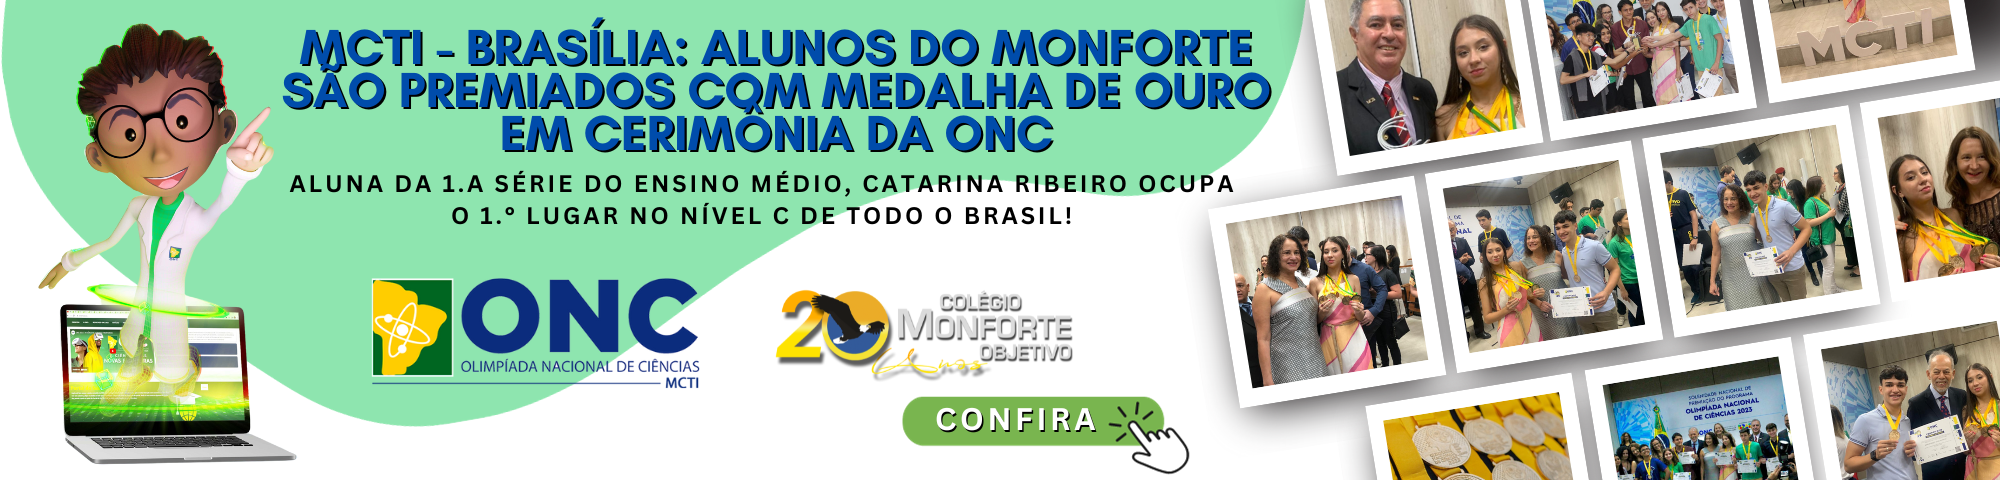 MCTI - Brasília: Catarina Ribeiro conquista o 1.º lugar de todo o Brasil e recebe medalha de ouro em cerimônia de premiação da ONC!